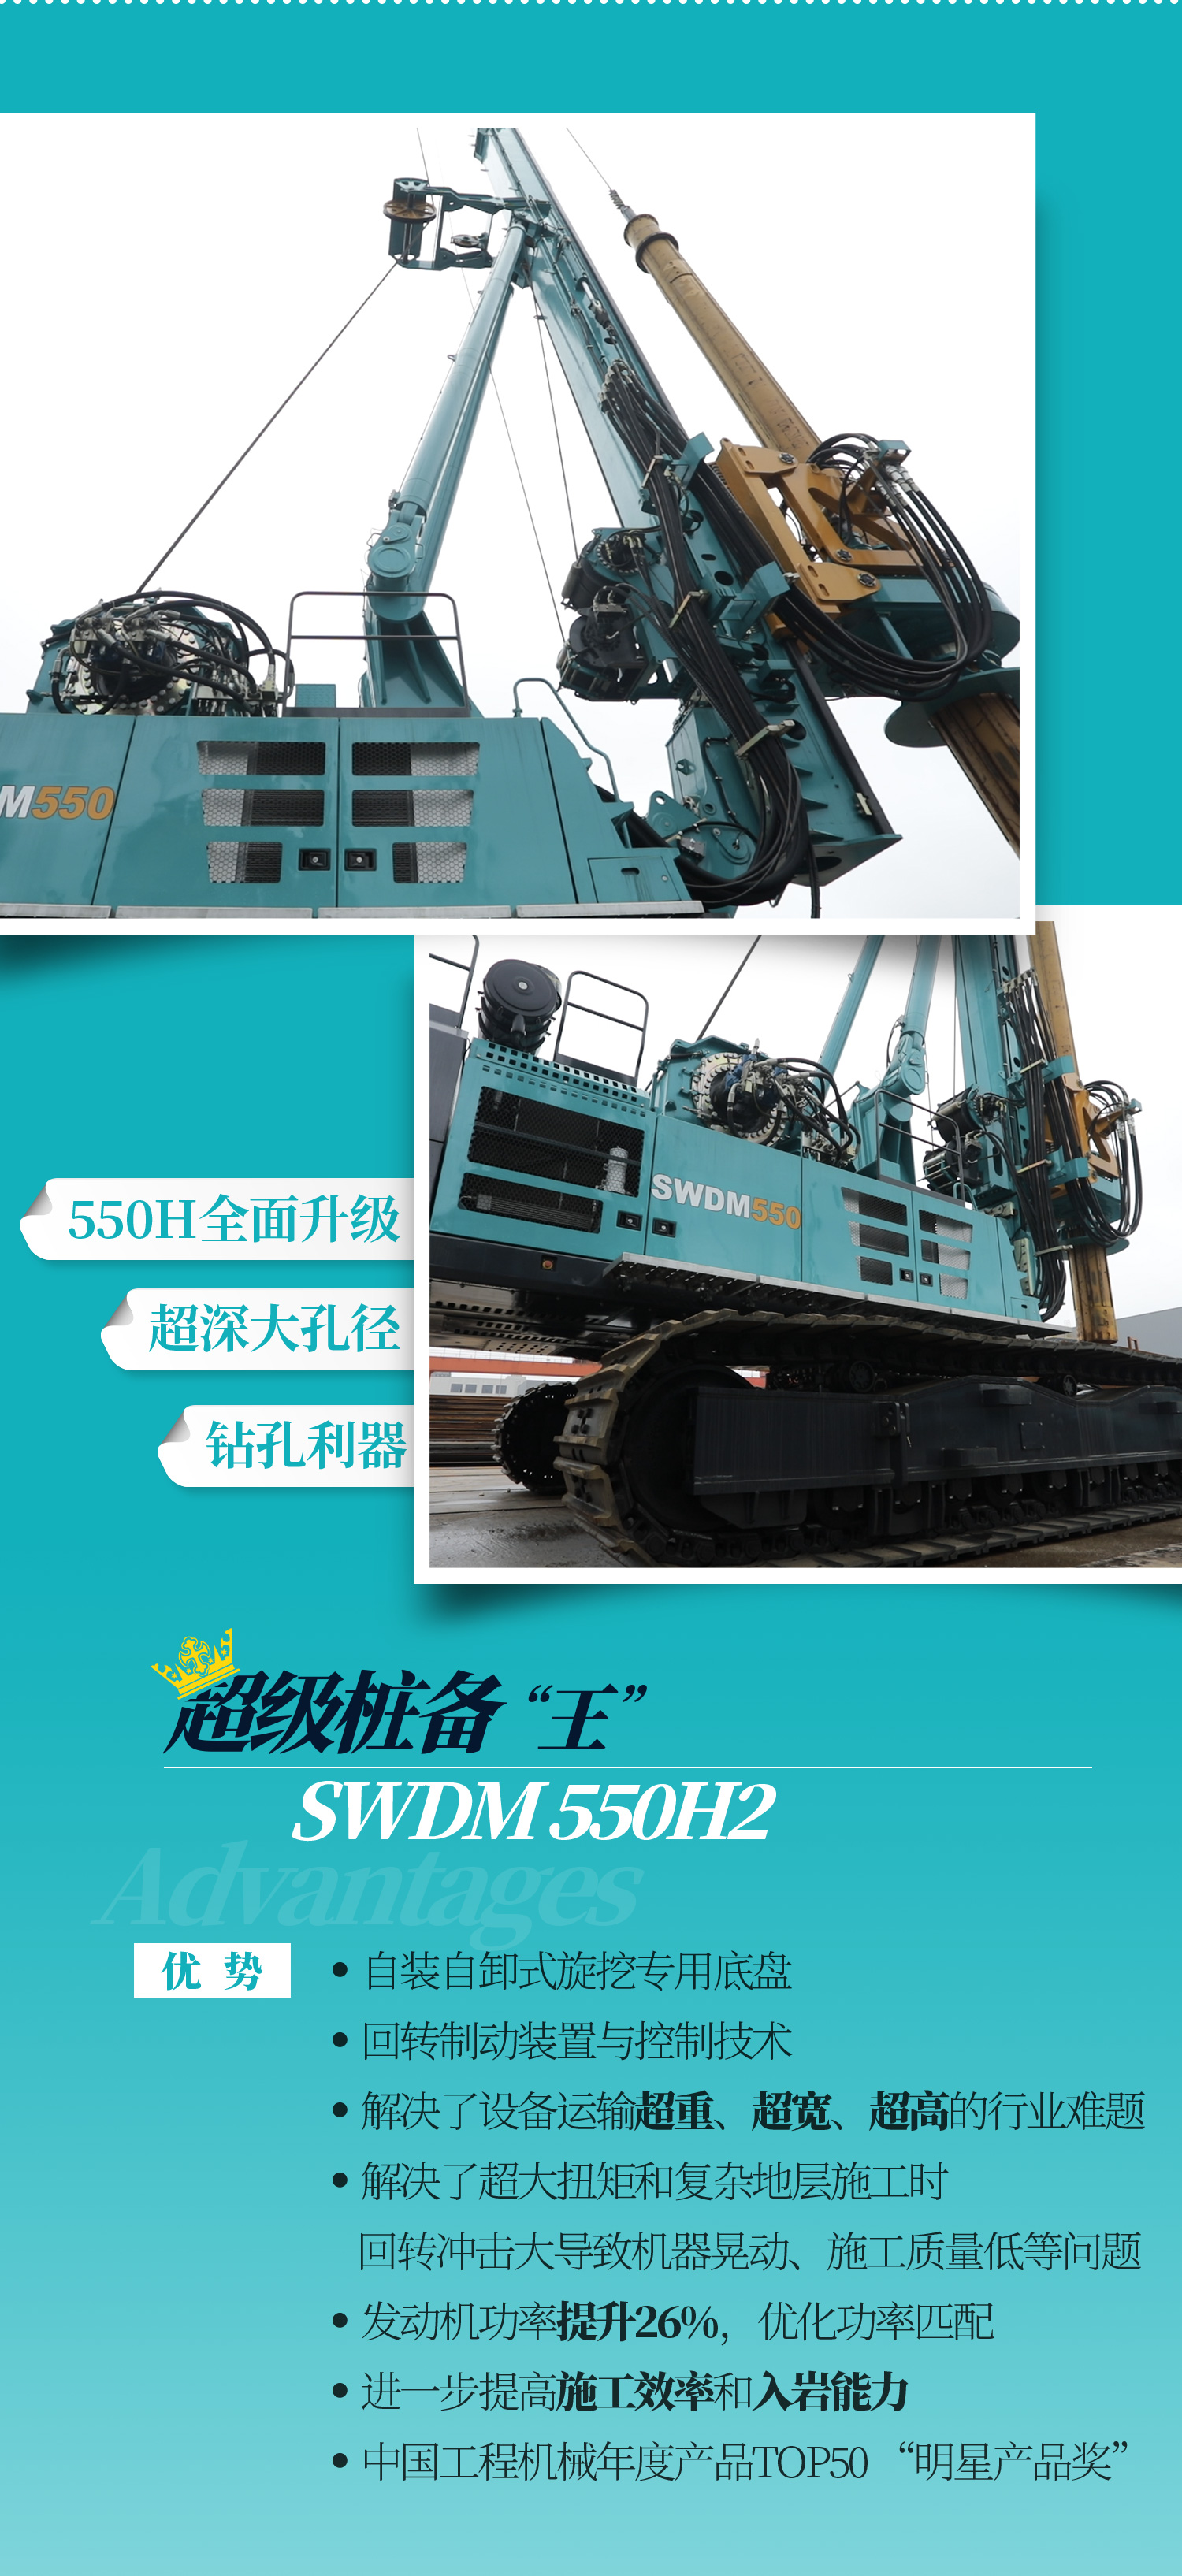 SWDM550H2 超大型多功能旋挖钻机